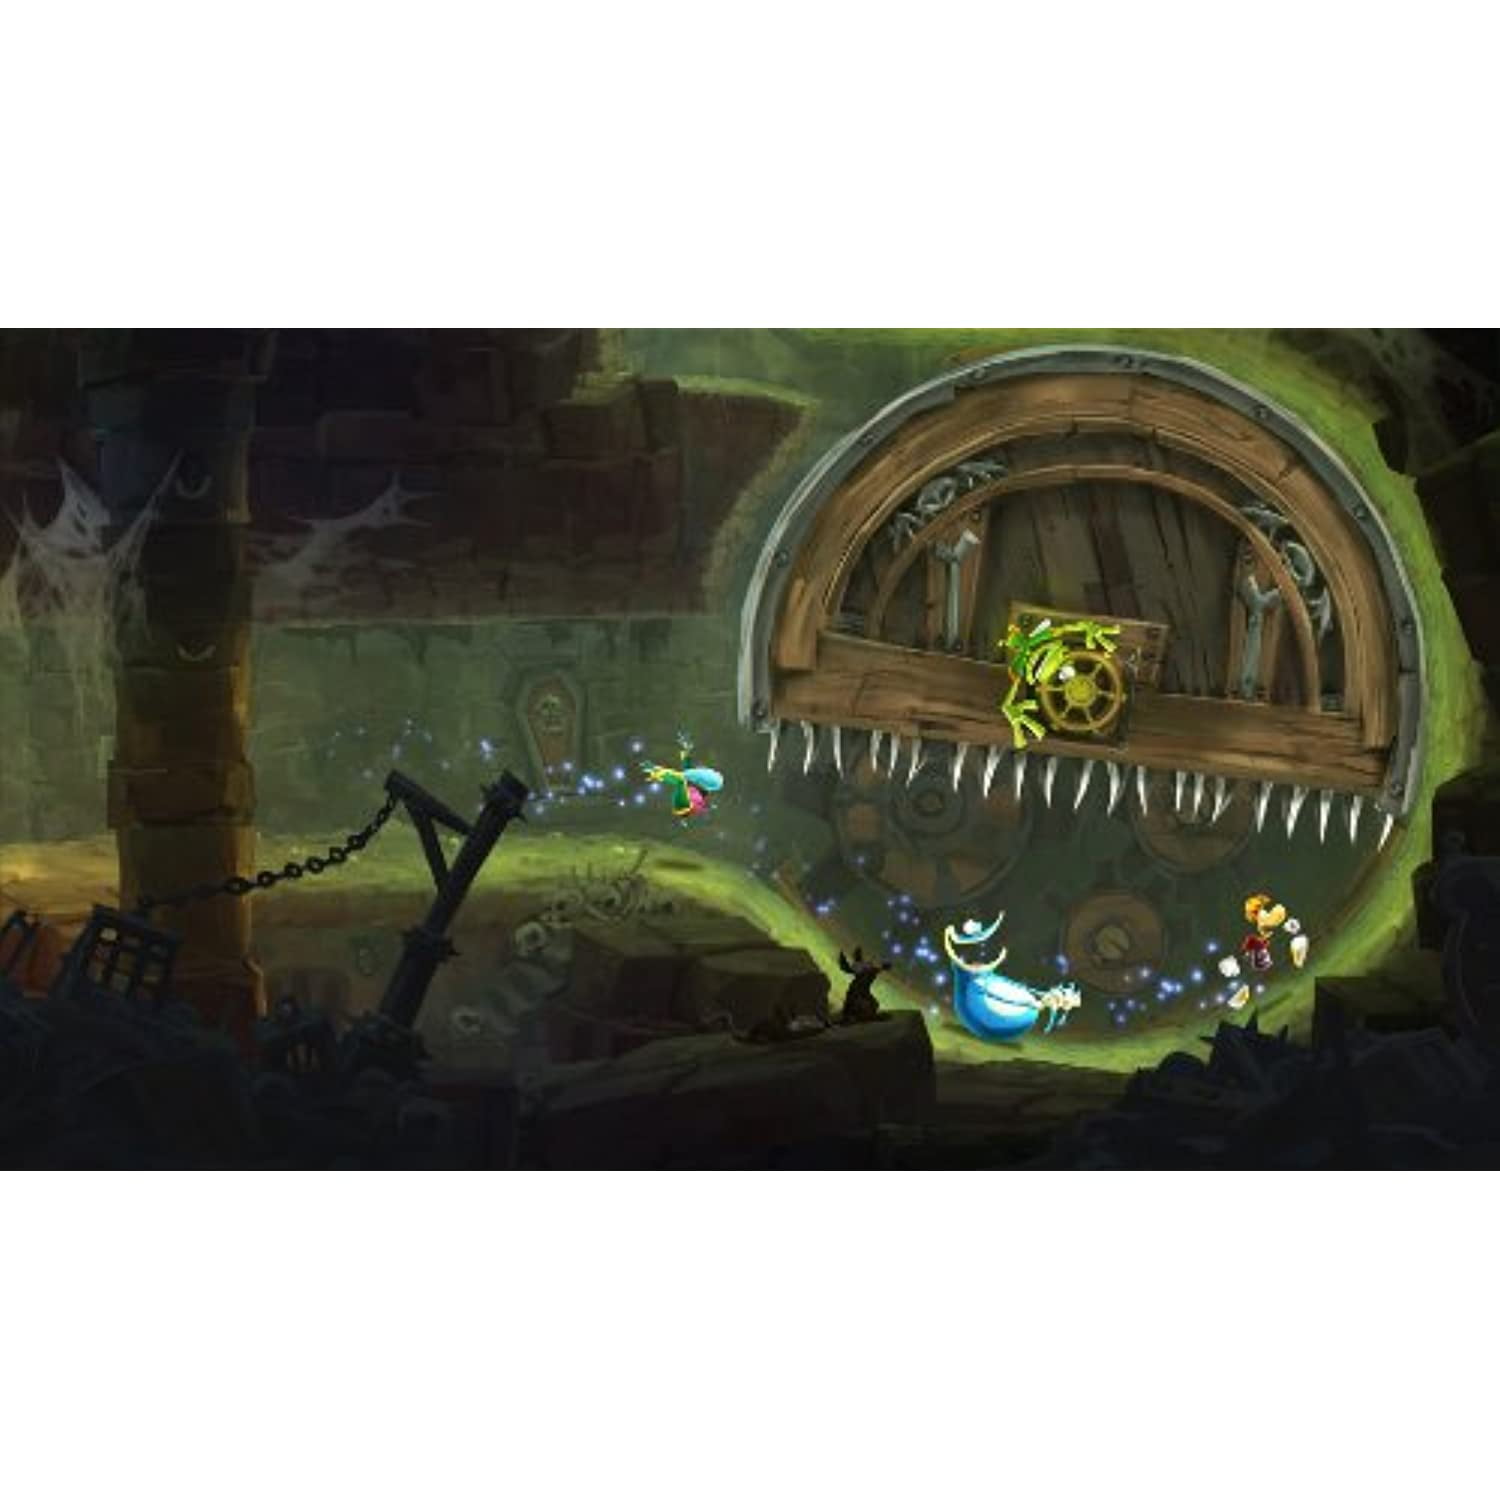 Jogo Rayman Legends - Xbox 360 em Promoção na Americanas